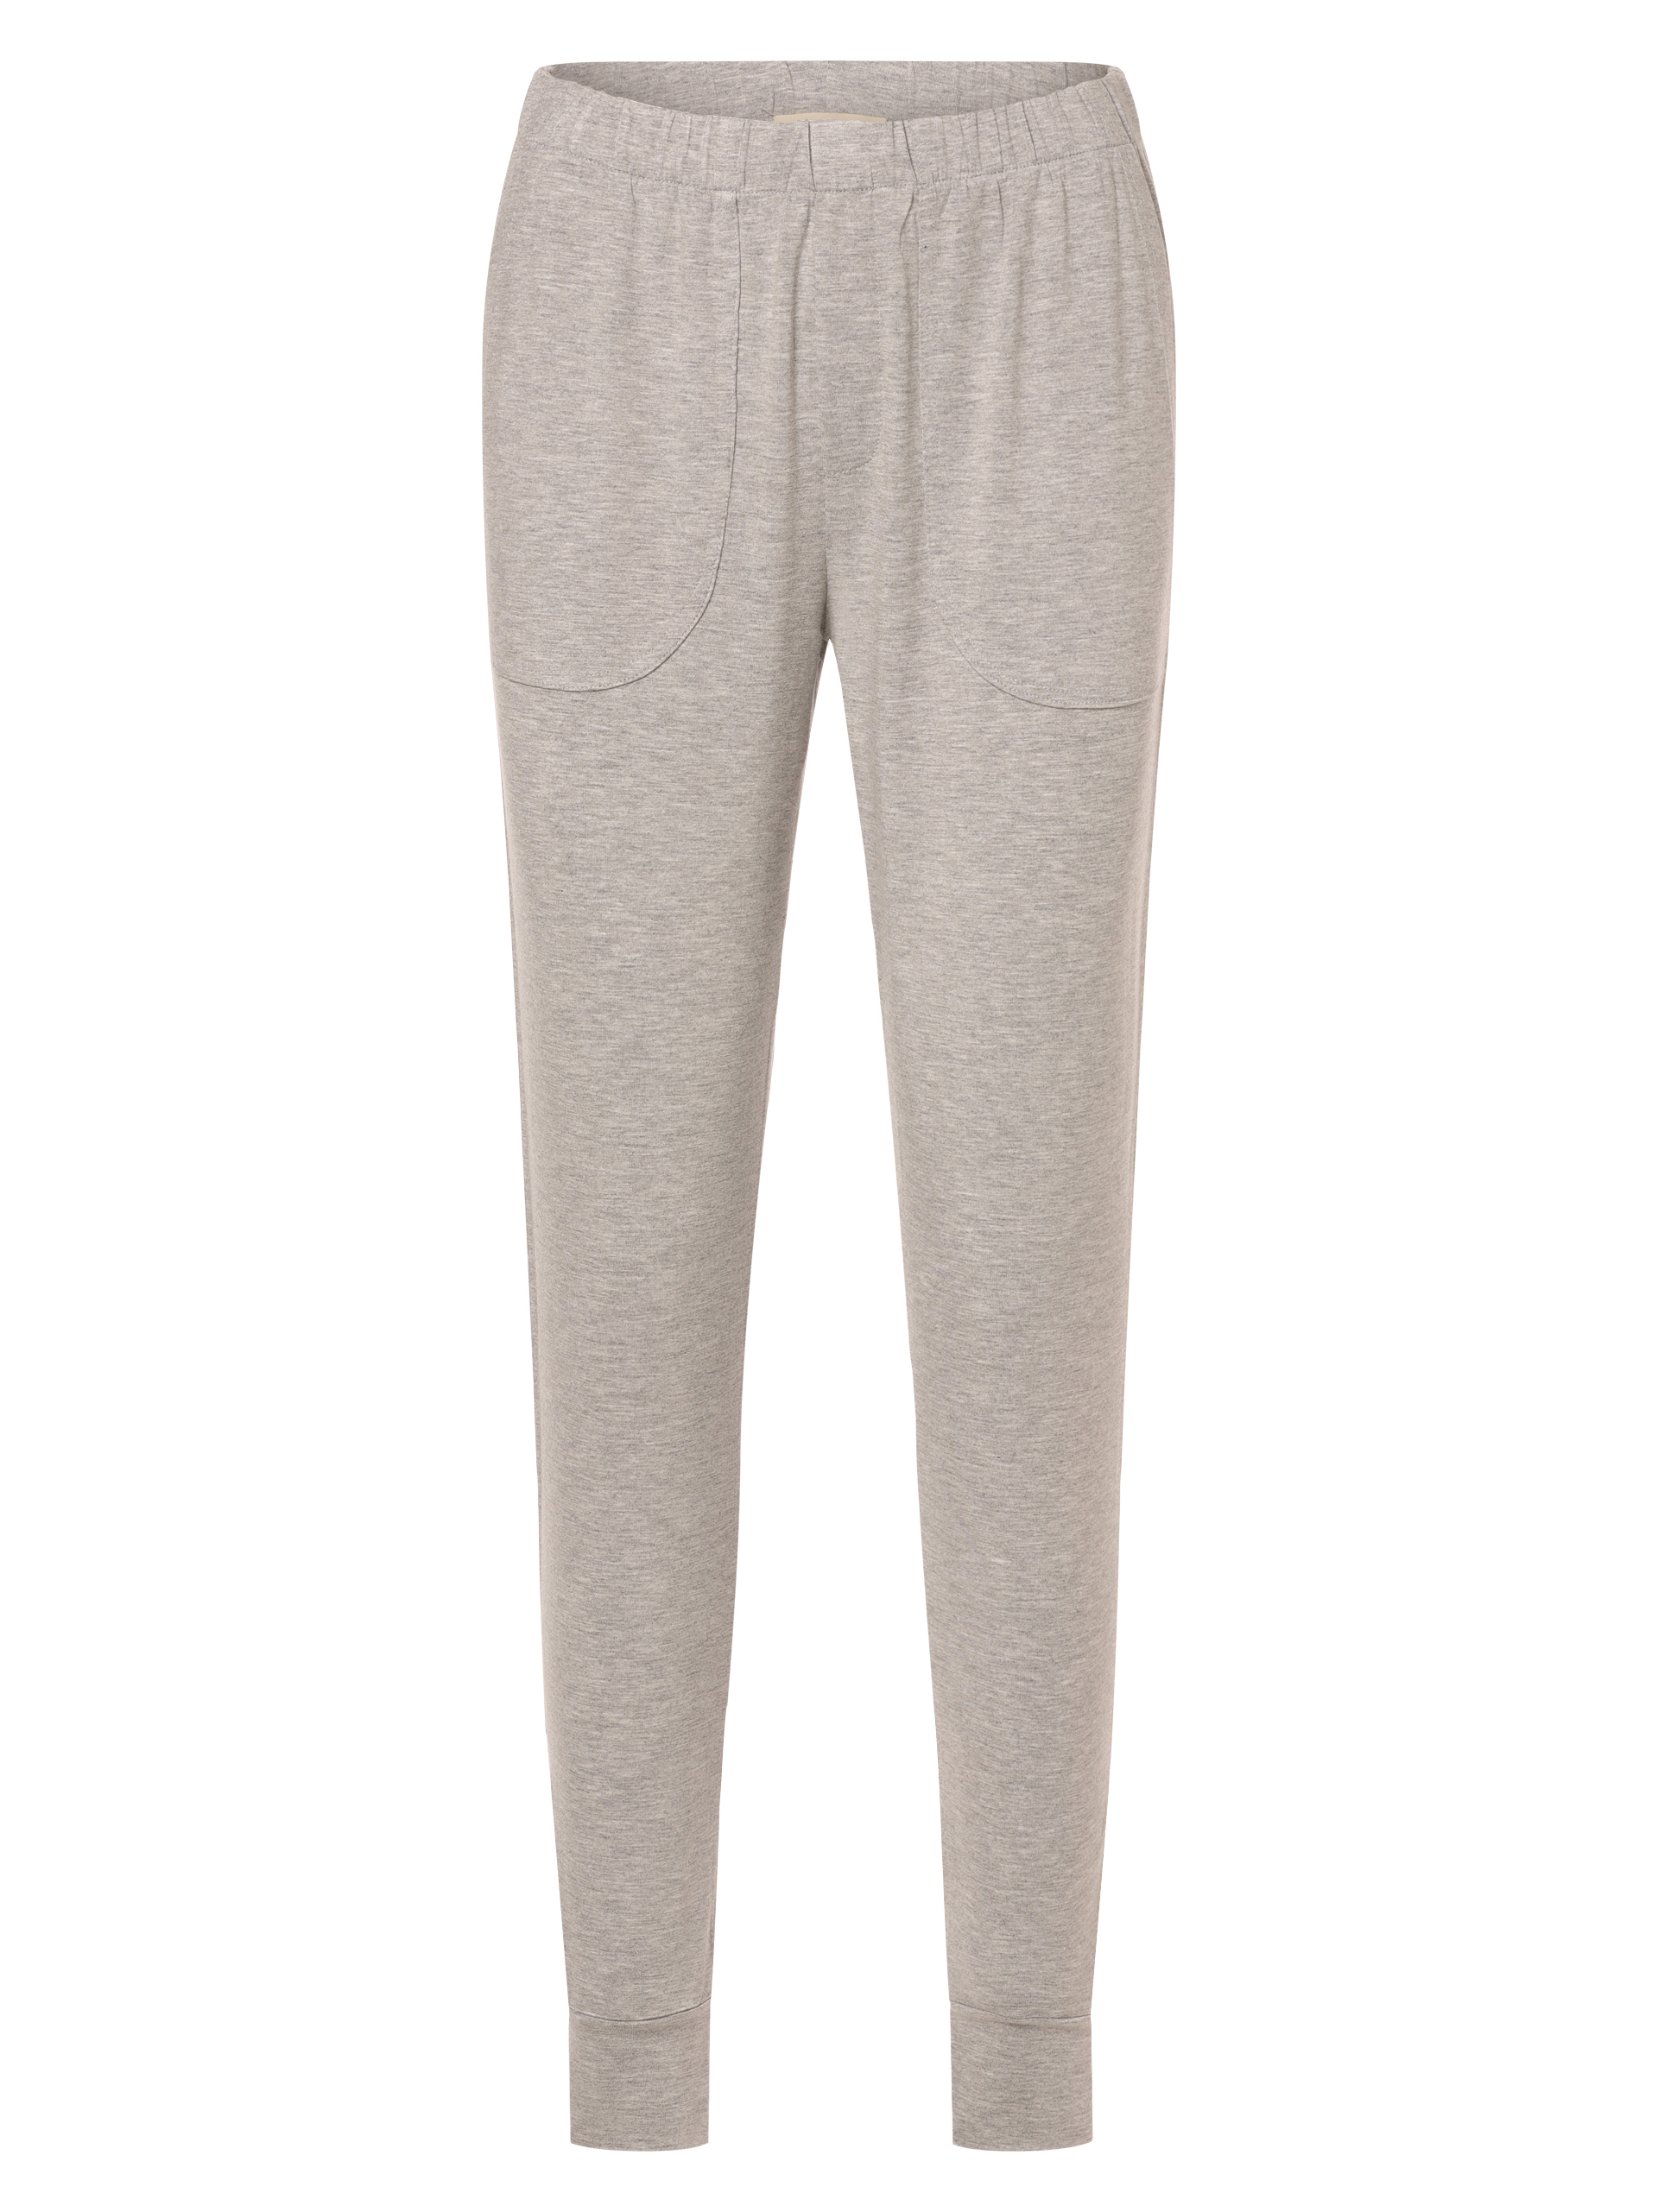 пиджак marie by marie средней длины размер onesize серый Пижамные брюки Marie Lund, светло-серый